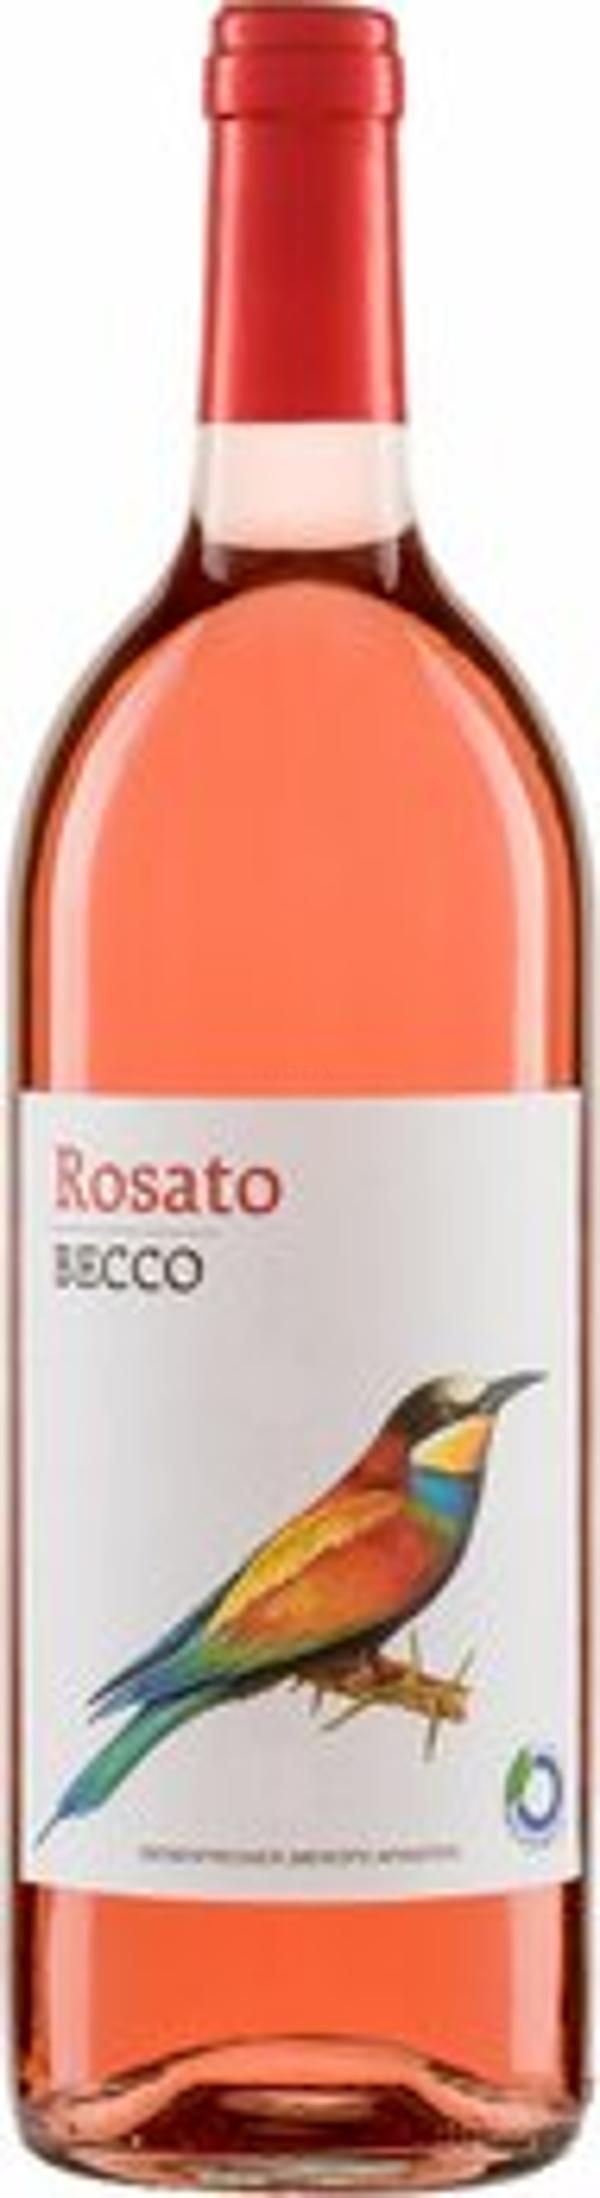 Produktfoto zu Becco Rosato